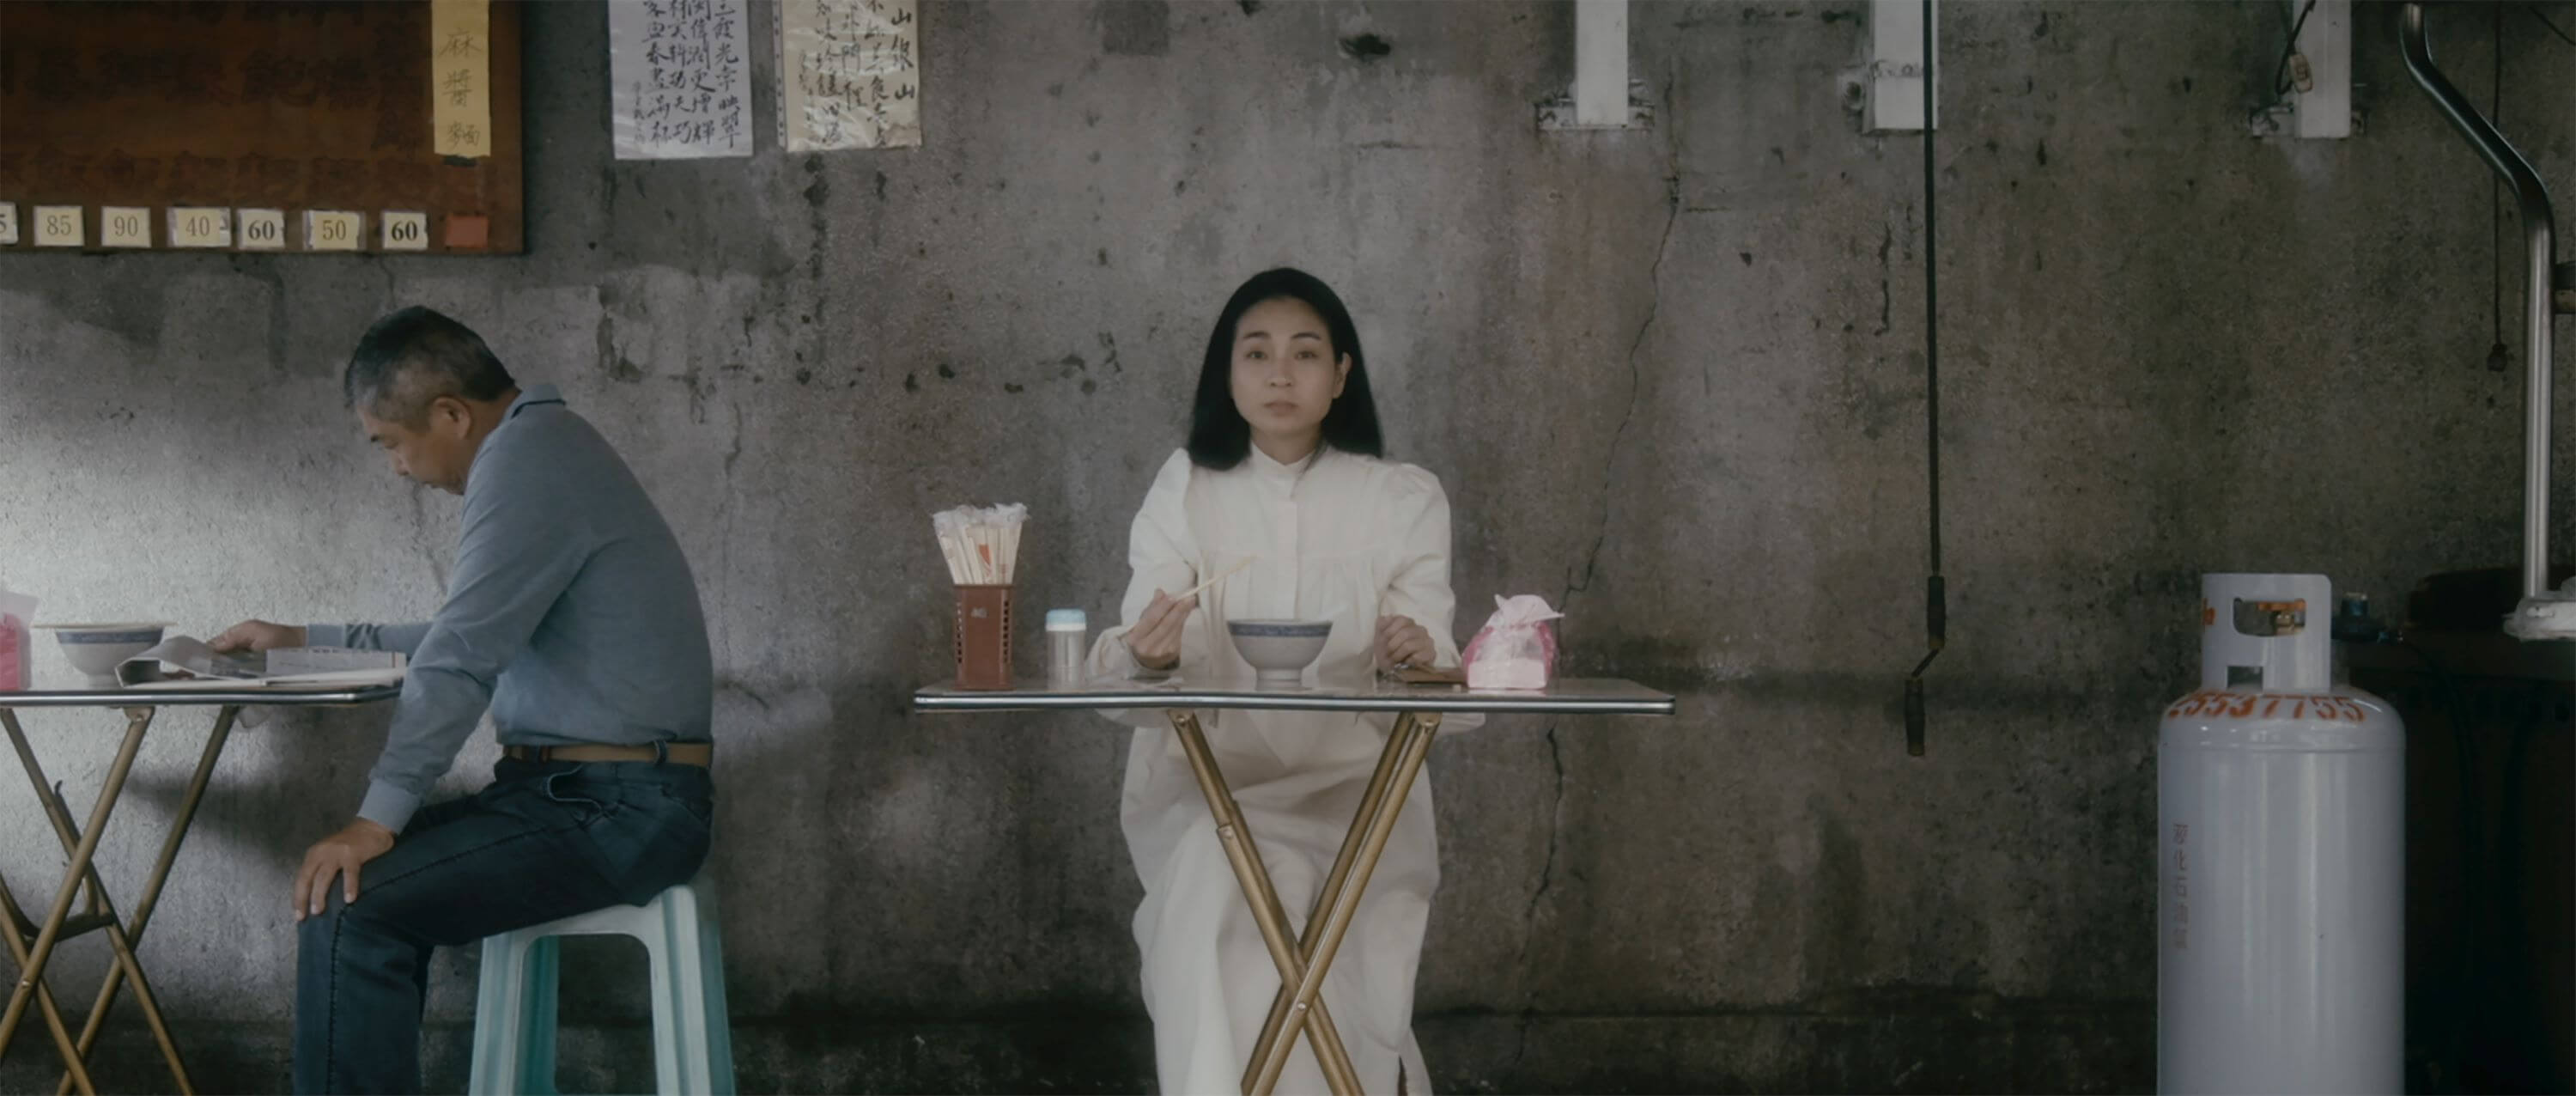 吳家昀《無盡》，2021，電影，10分40秒循環播放，影像截圖由藝術家提供。